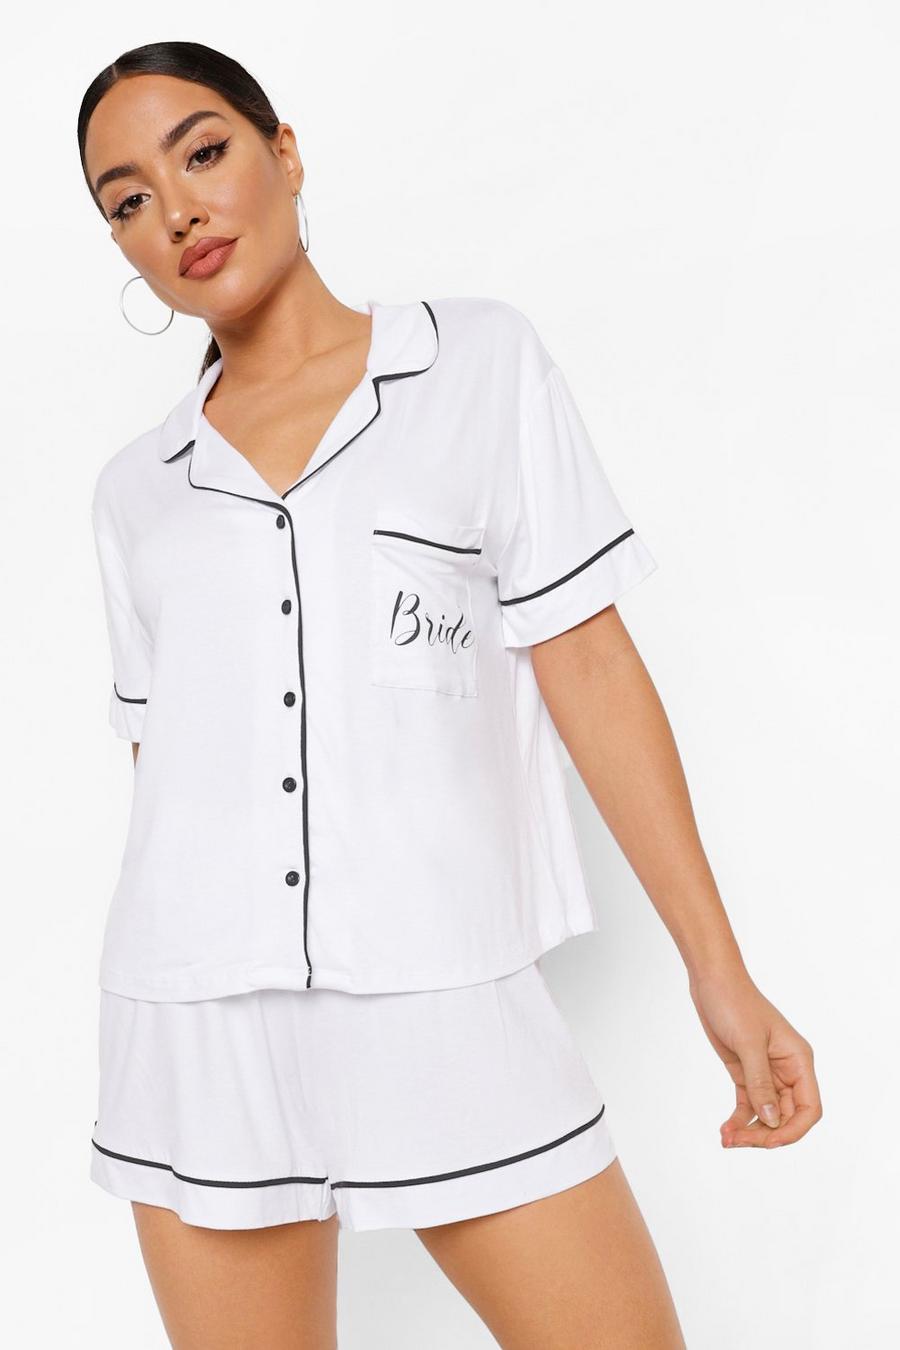 Bride Jersey Pyjama-Set mit Knopfleiste, Weiß